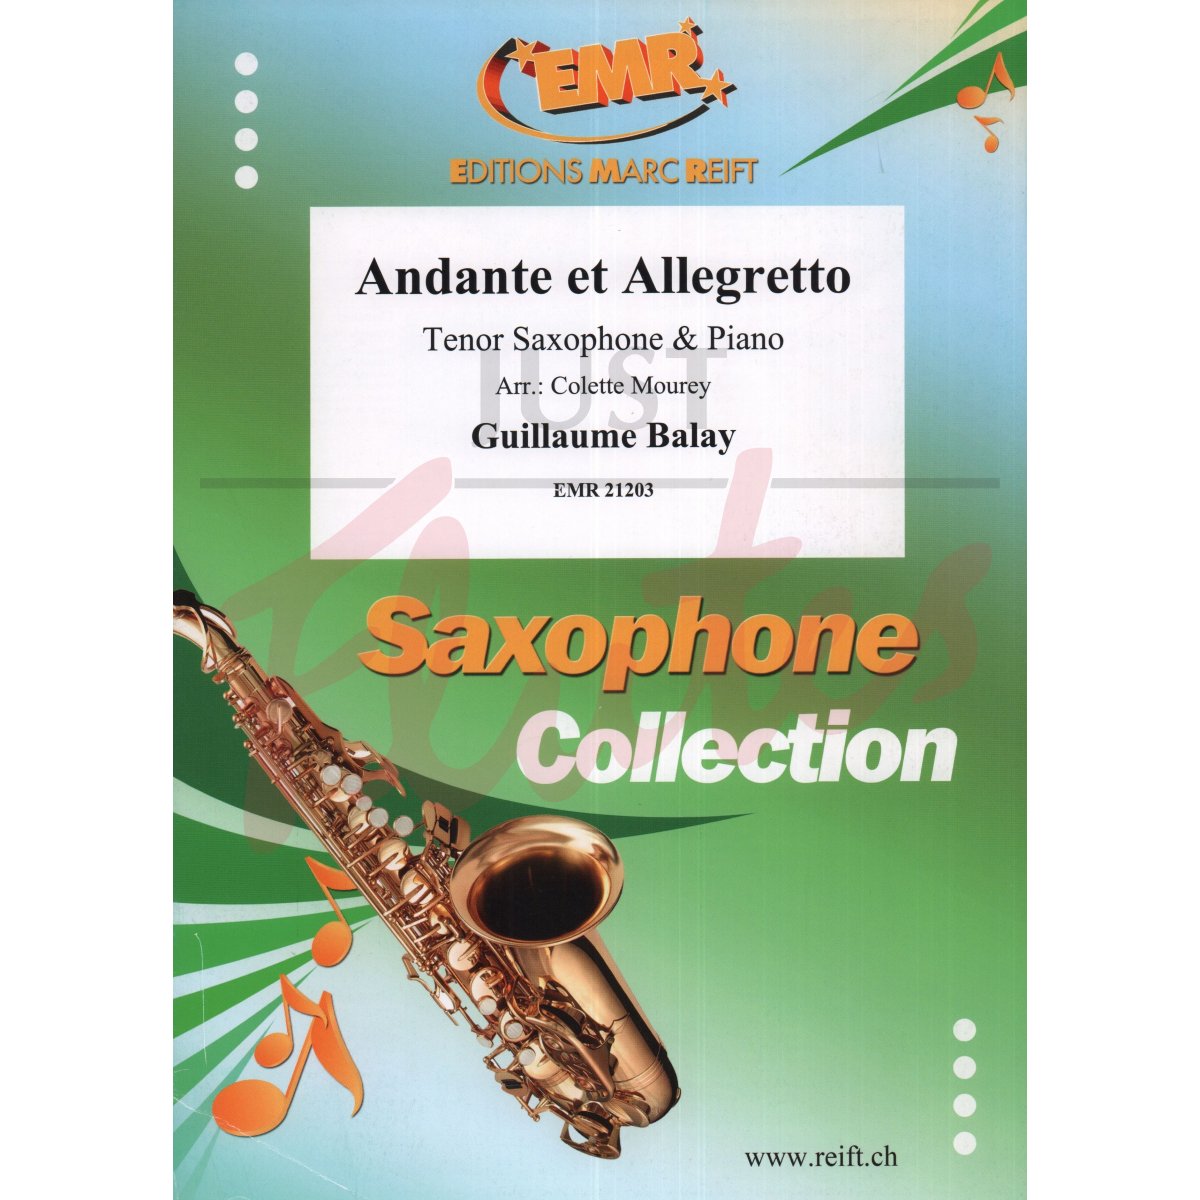 Andante and Allegretto for Tenor Saxophone and Piano